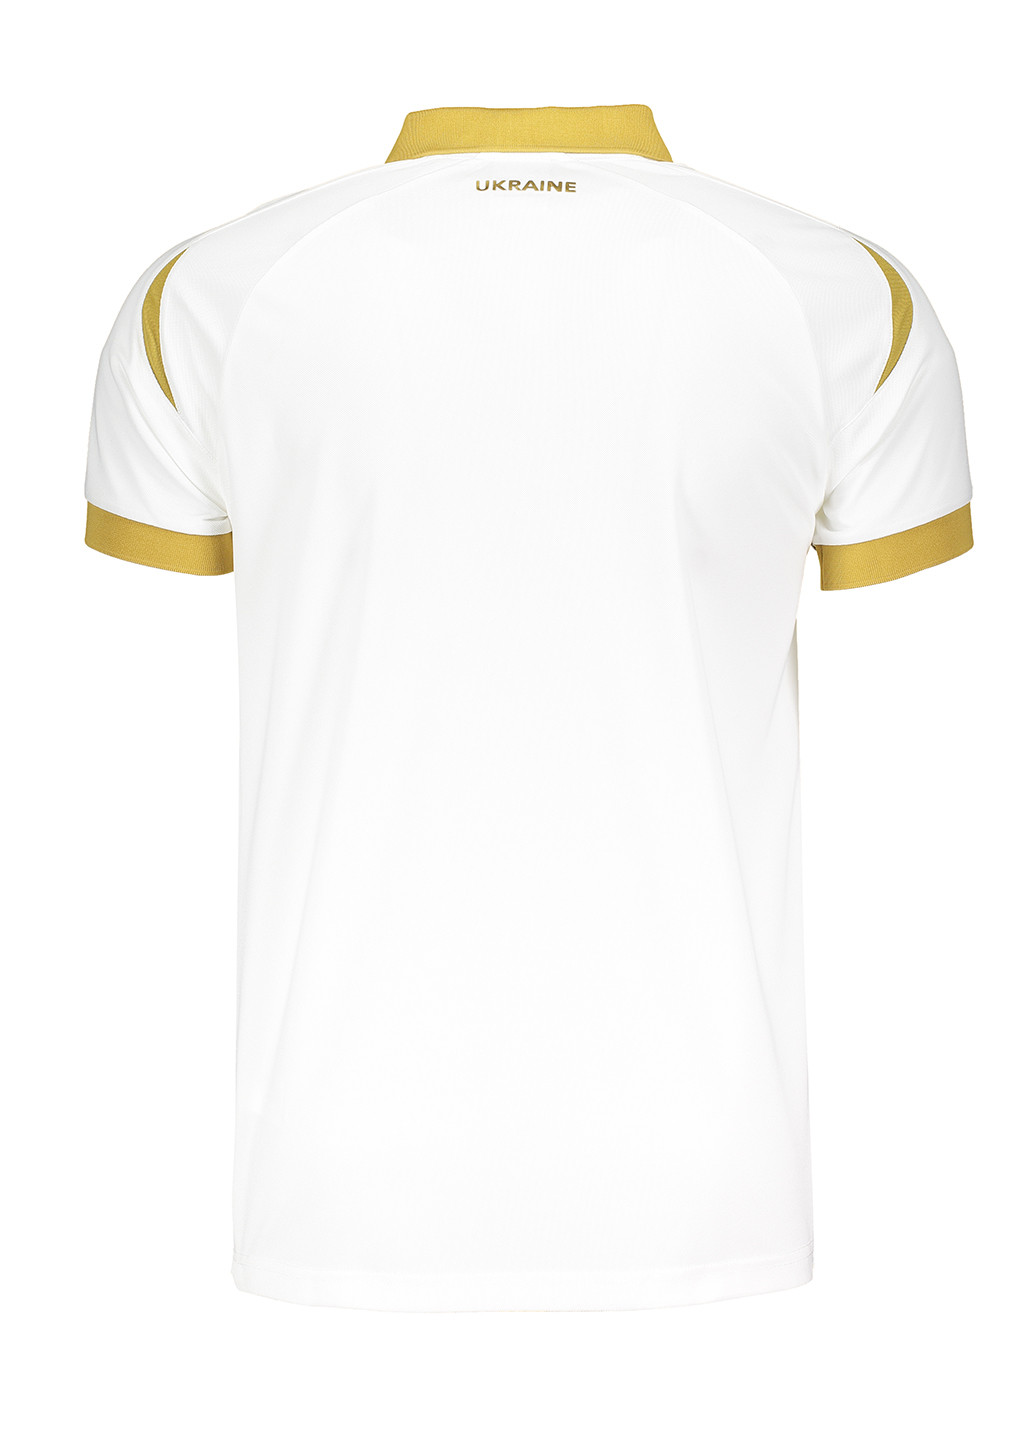 Белая футболка-поло для мужчин Joma с логотипом